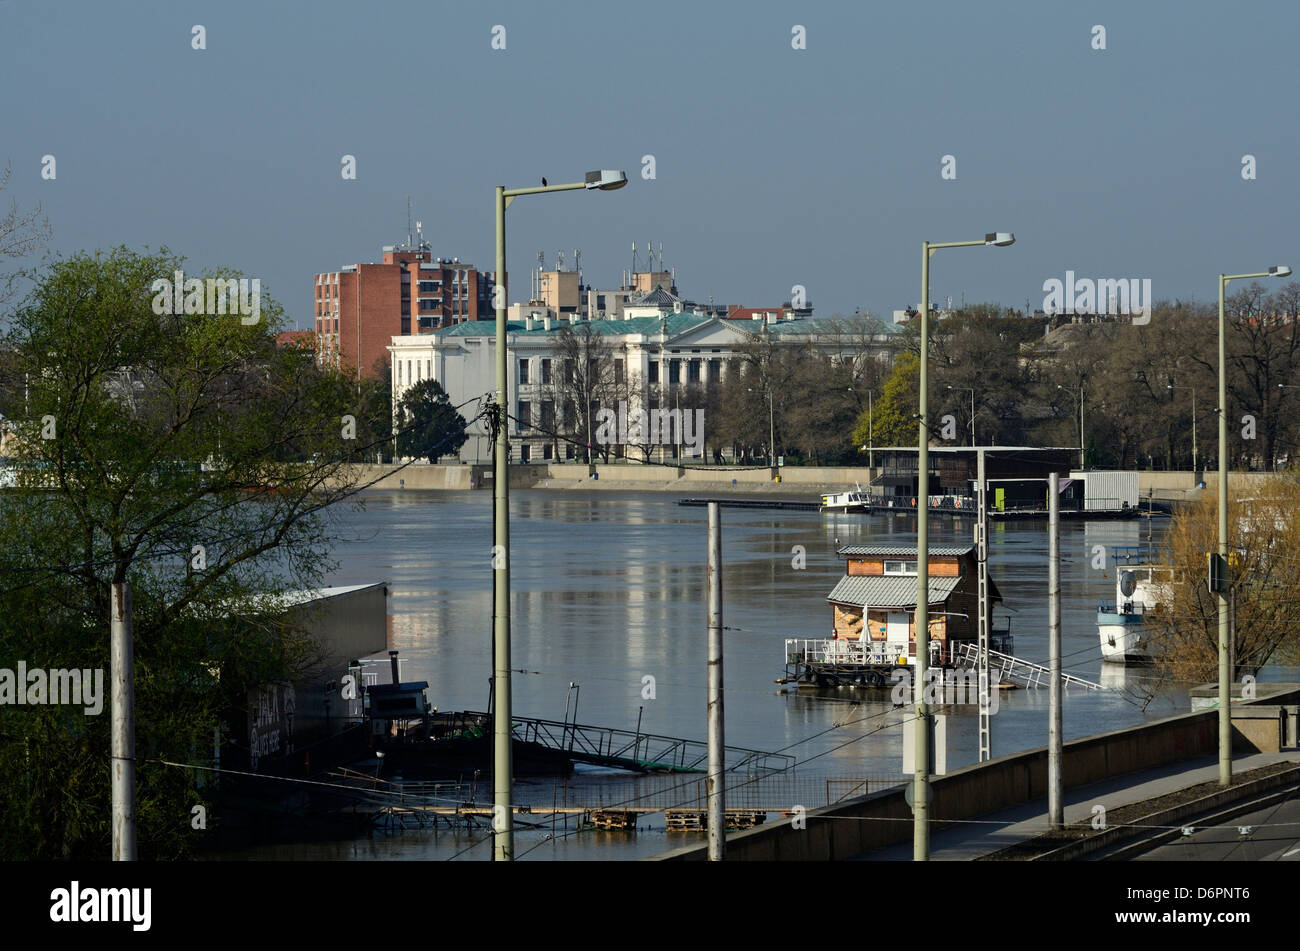 Le inondazioni del fiume Tisza a Szeged Ungheria Europa centro-orientale in background è Móra Ferenc Museum Foto Stock